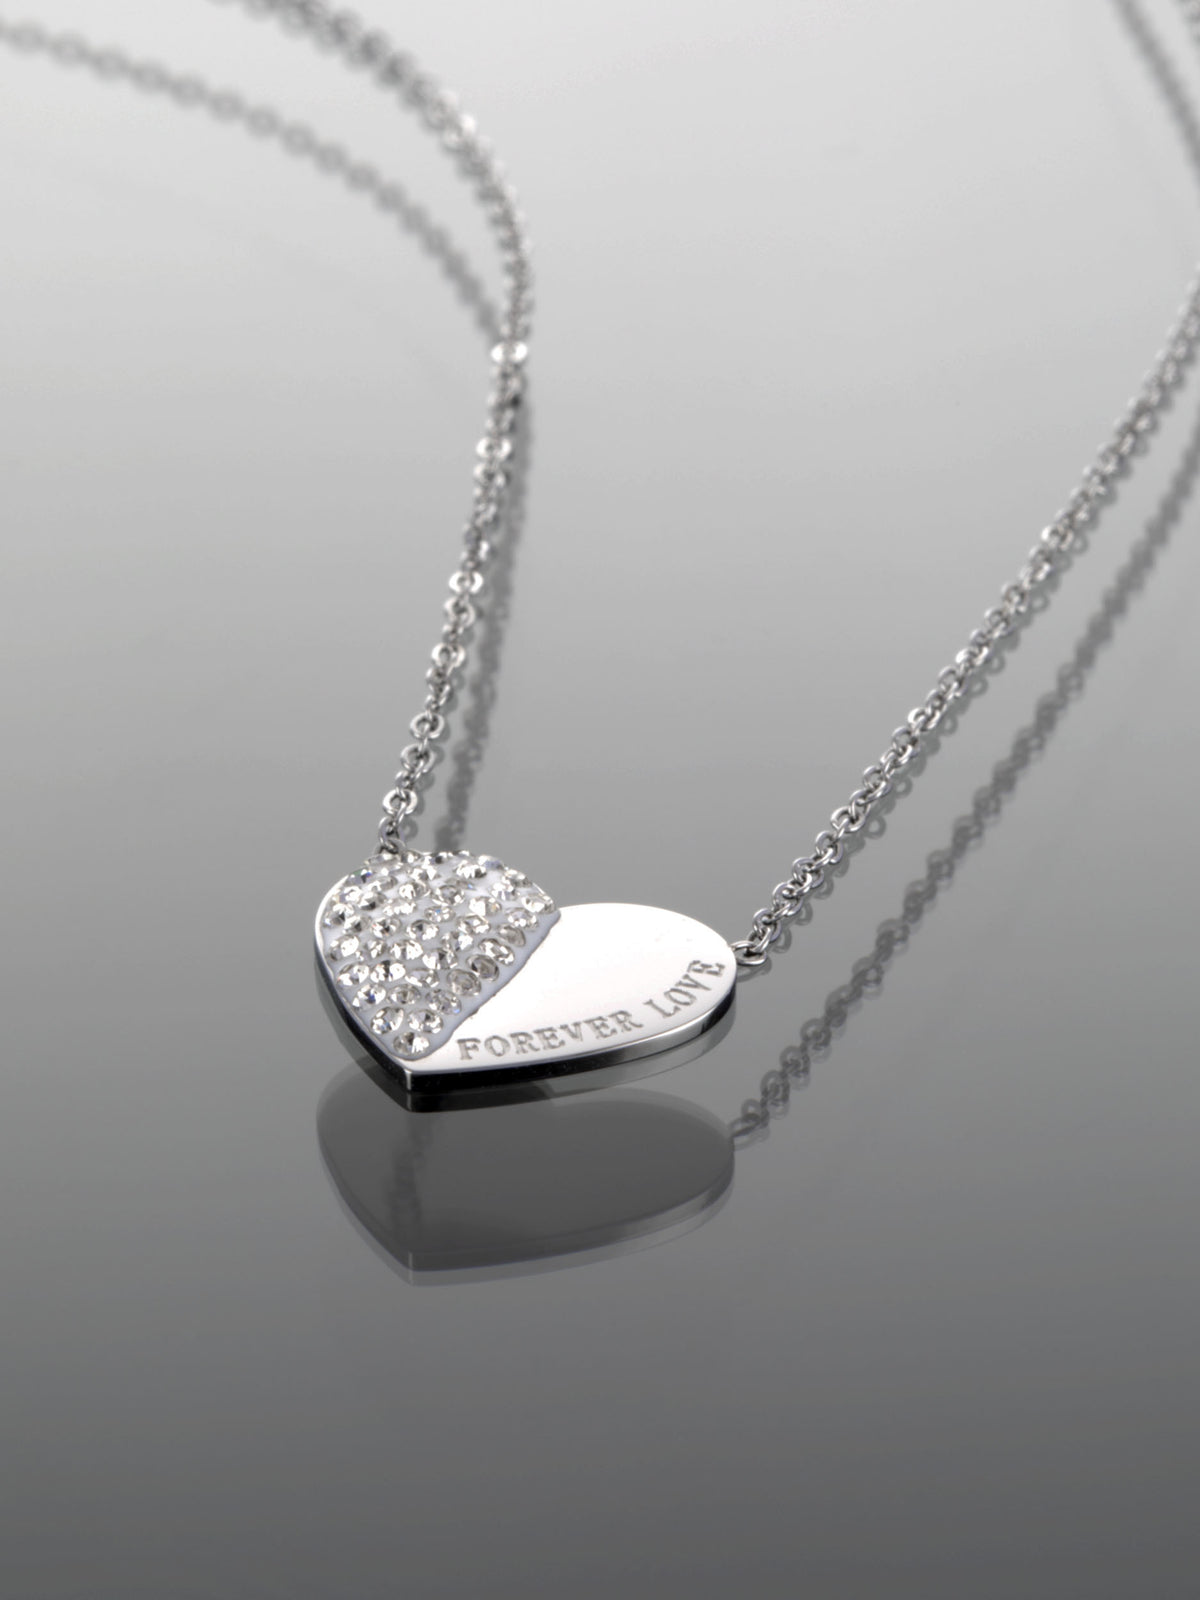 Luxusní ocelový náhrdelník ve tvaru srdce napůl vykládaný čirými krystaly a nápisem FOREVER LOVE NK0683-0107